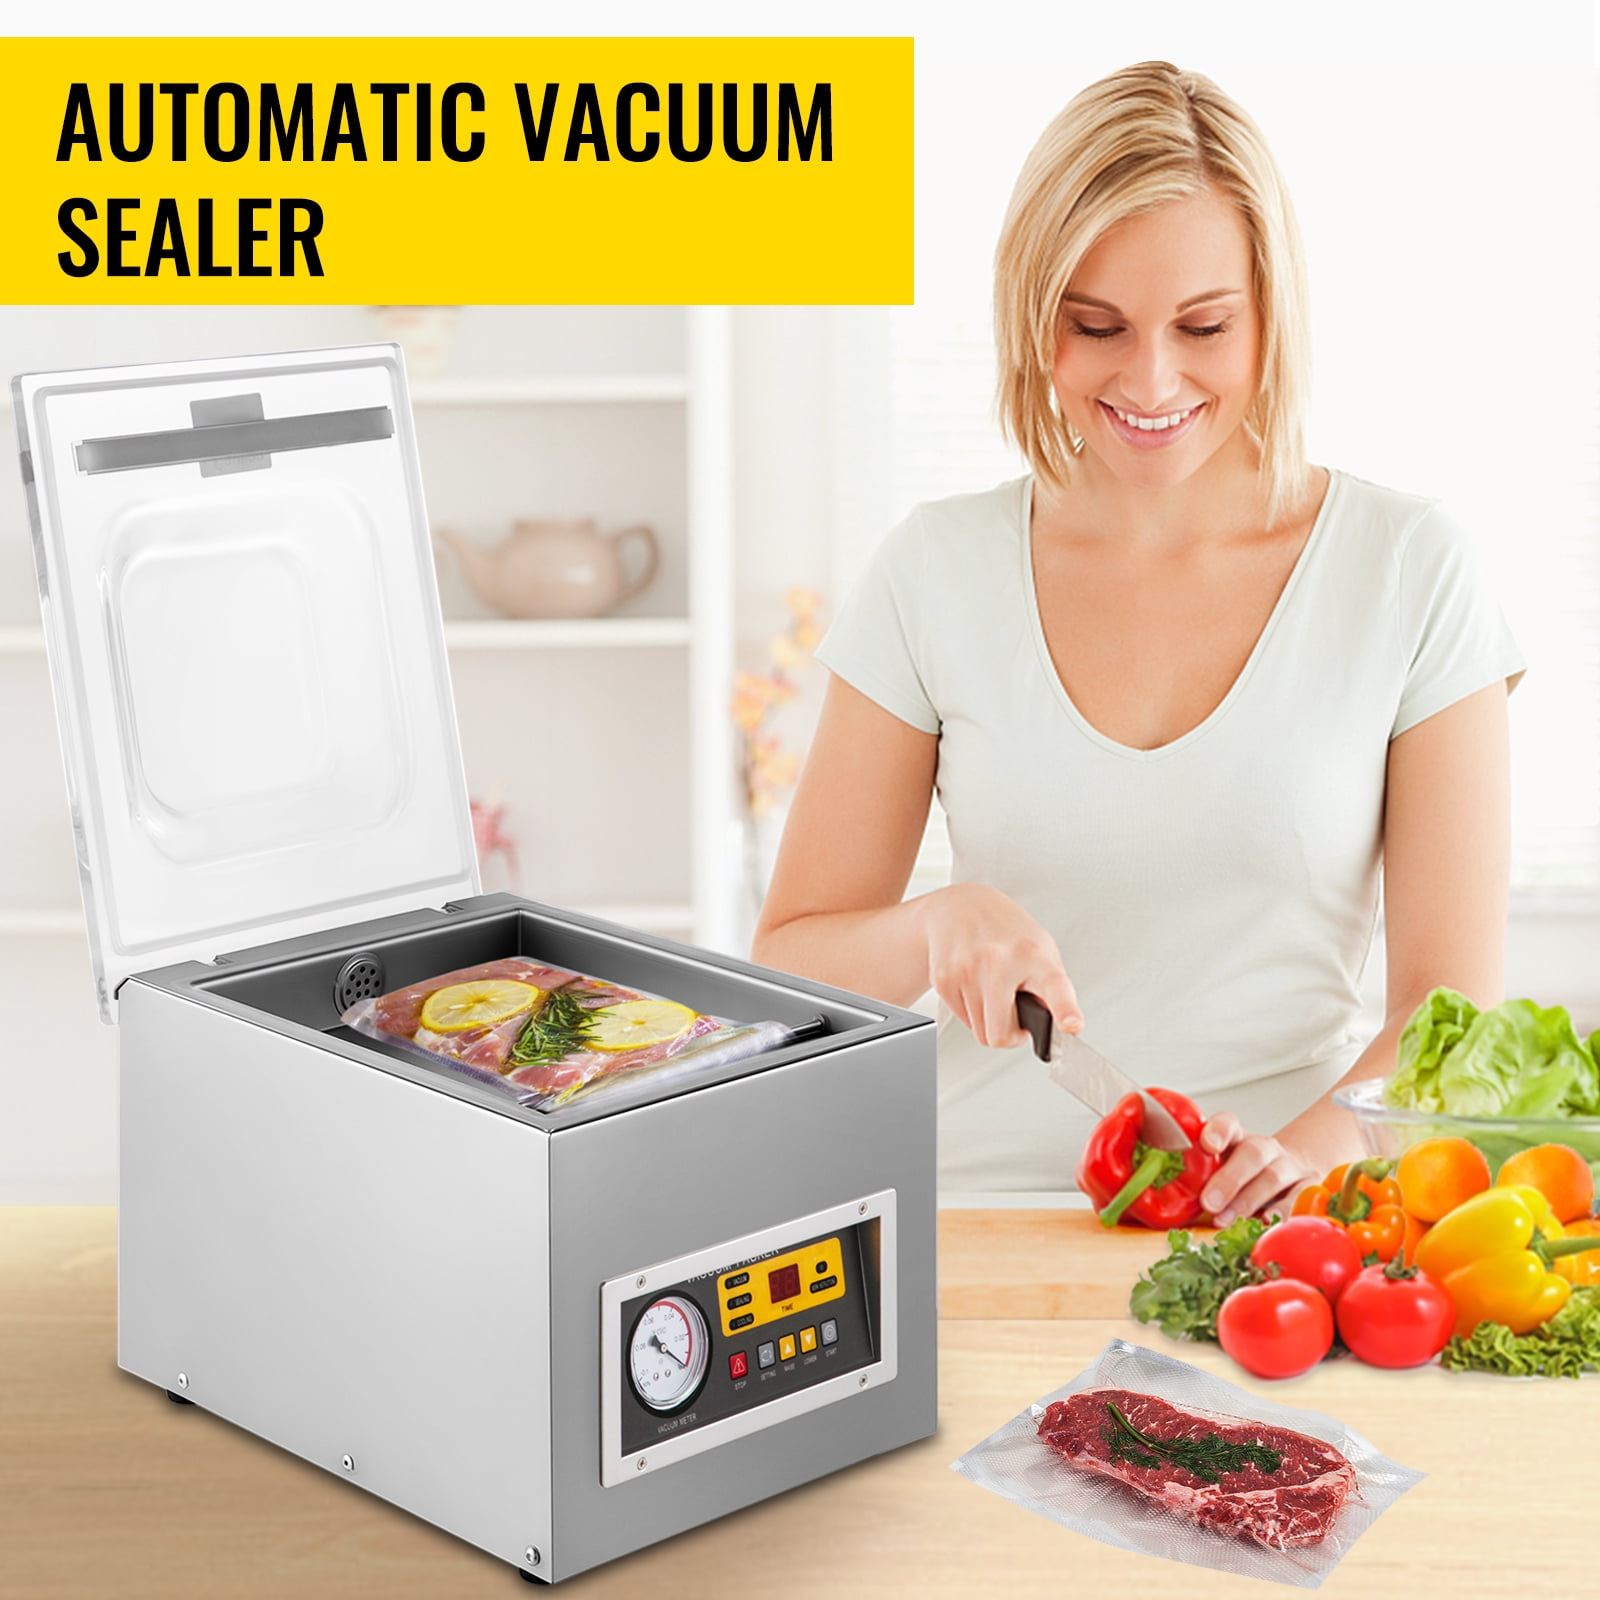 VEVOR Stainless Steel Chamber Vacuum Sealer Kitchen Food Vacuum Sealer  Digital Packaging Machine Sealer for Food Saver DZ-260ZKBZJ400W01V1 - The  Home Depot